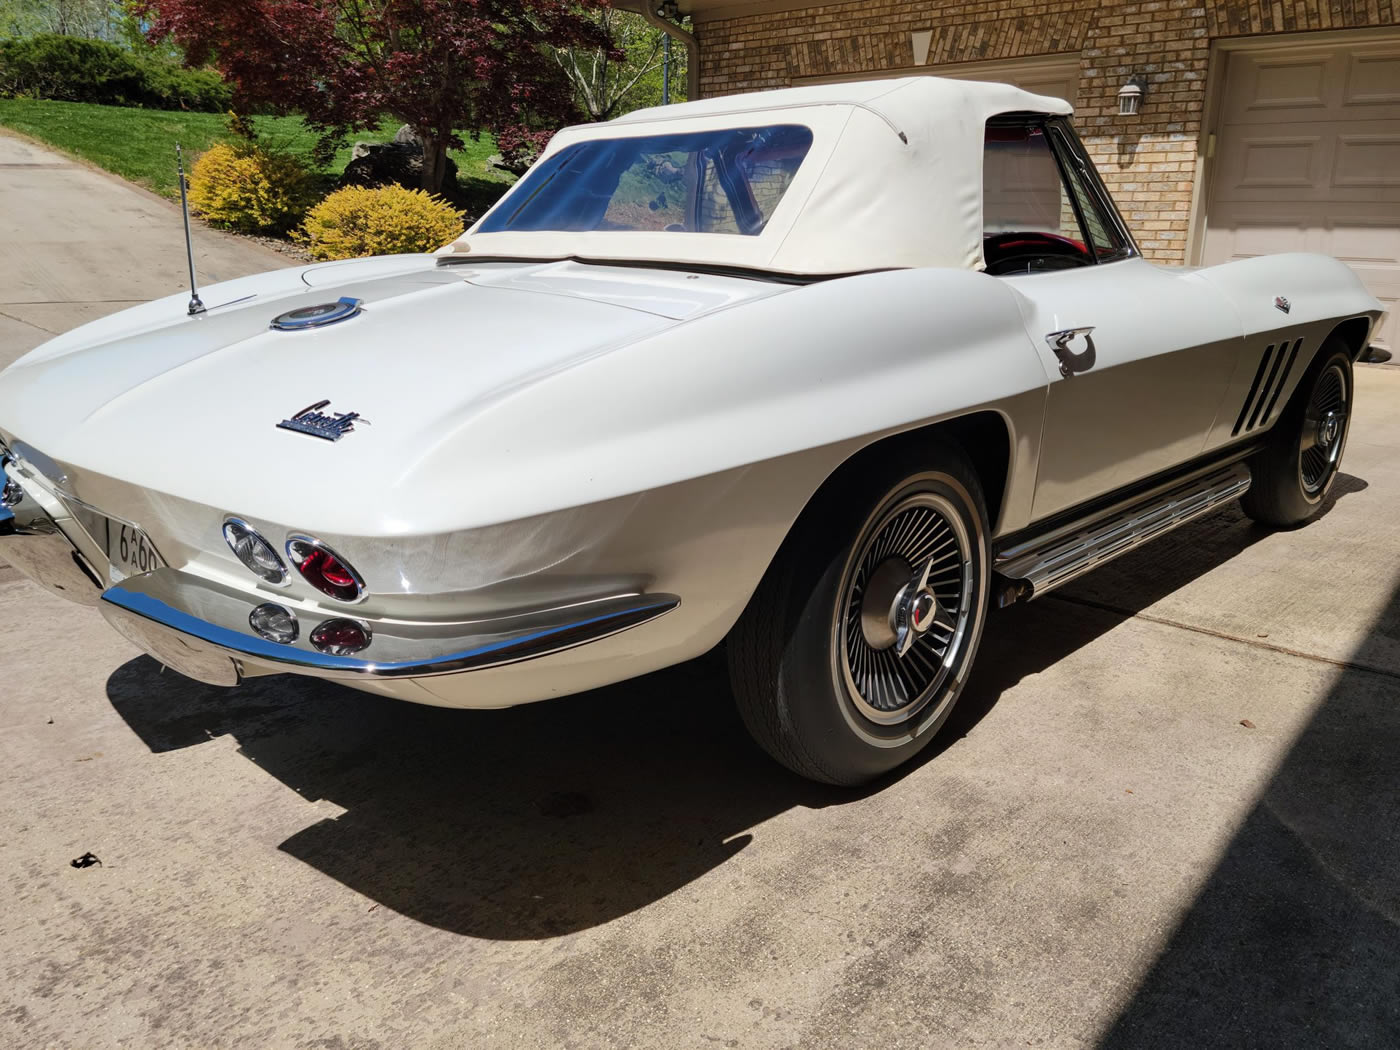 1966 Corvette Convertible in Ermine White